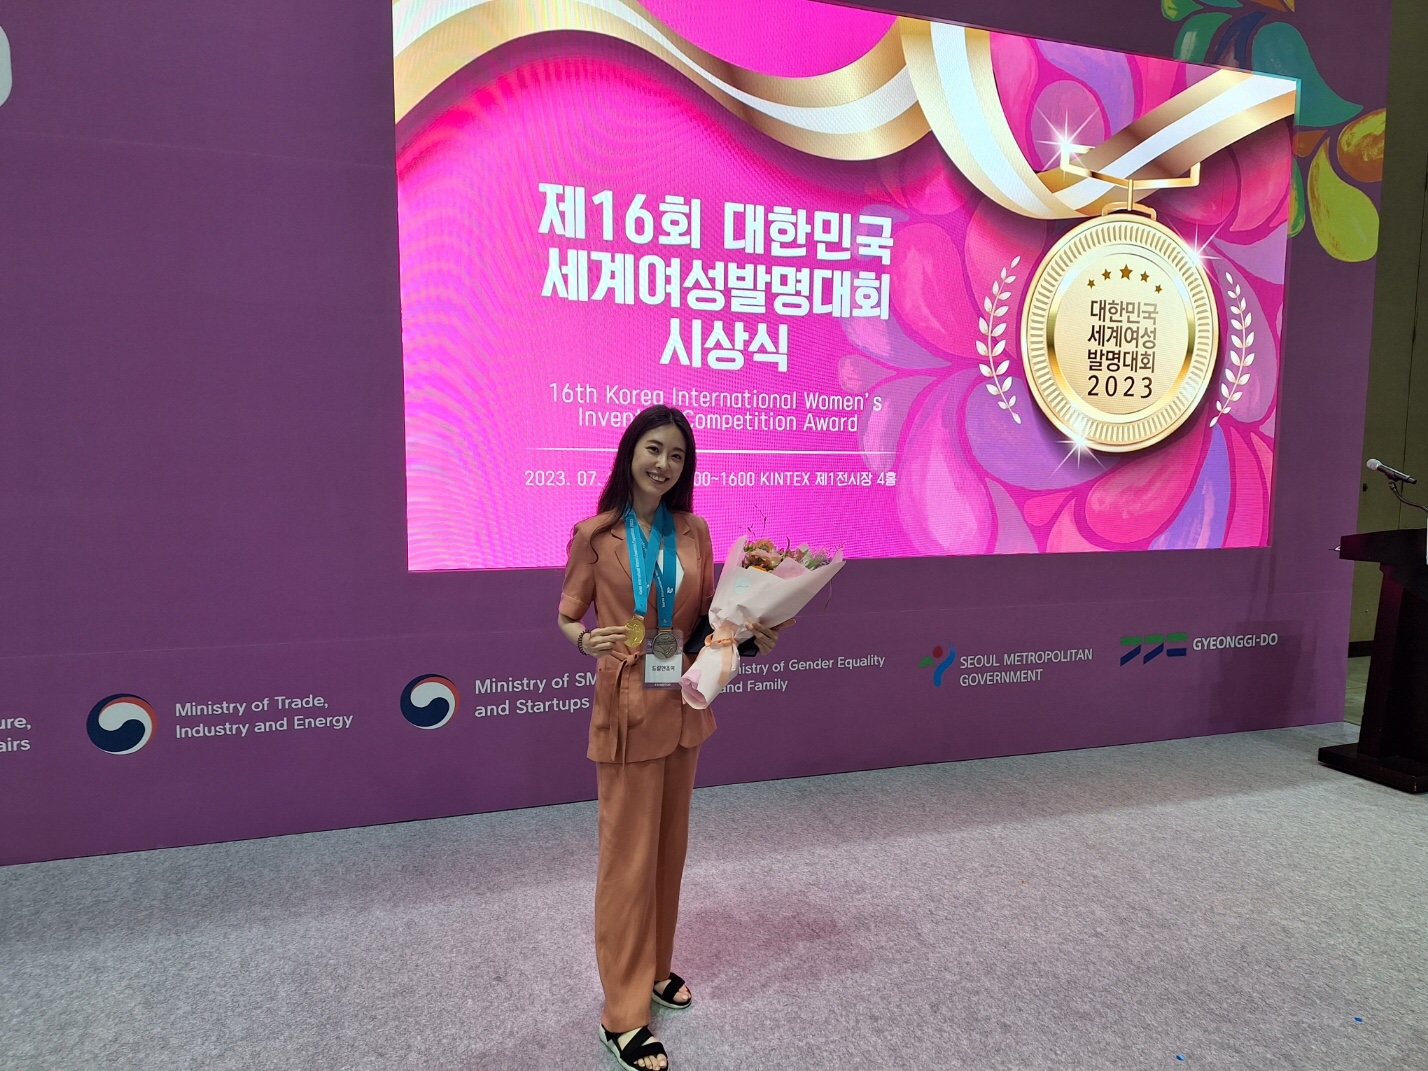 드림앤조이 홍은정 대표, ‘2023 여성발명왕 EXPO’ 금상 수상 쾌거